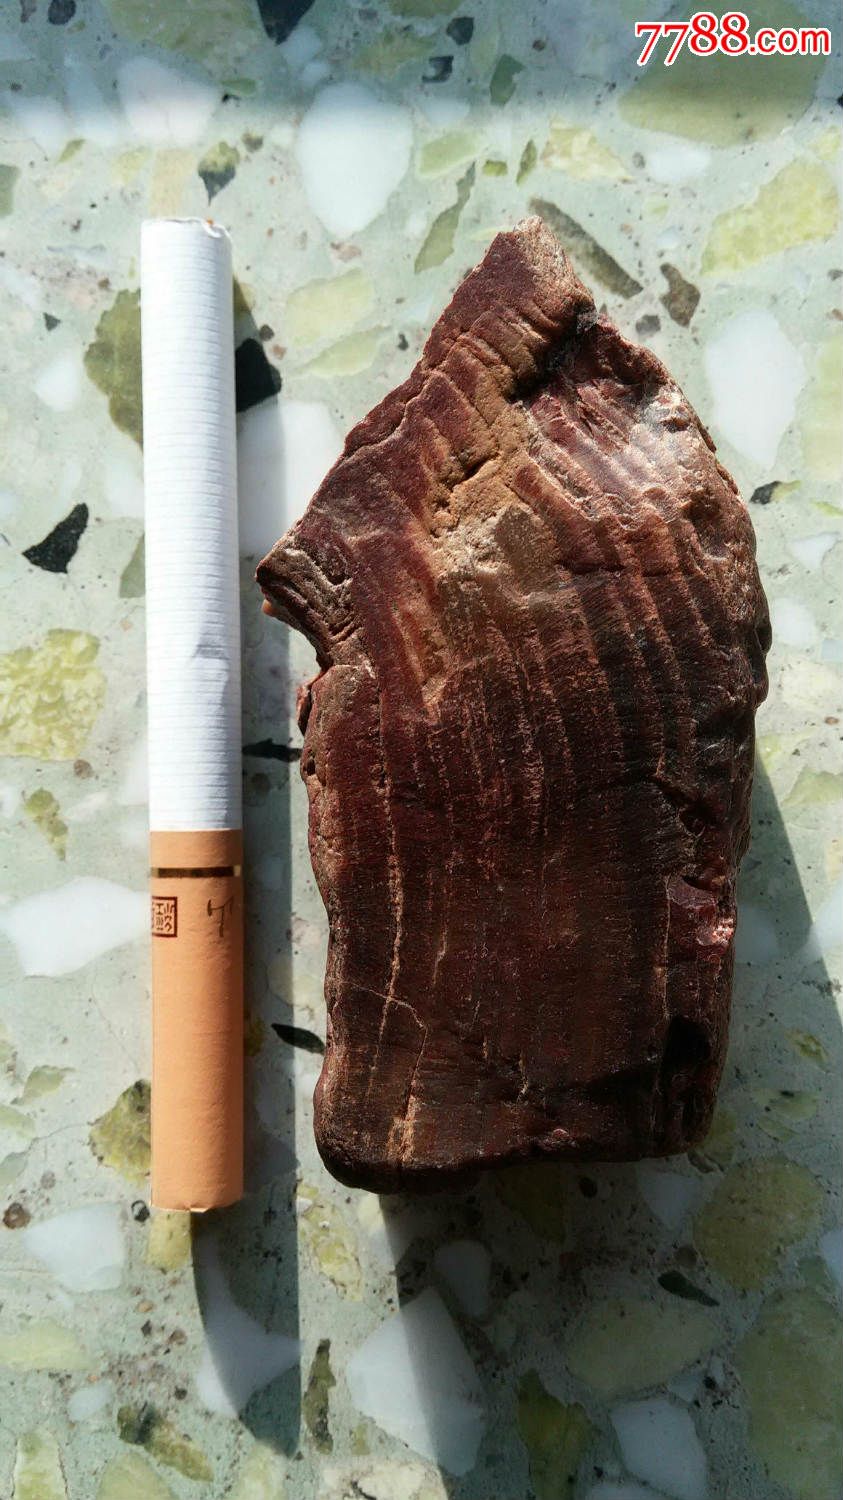 木化石(大部分红褐色,局部黑色)